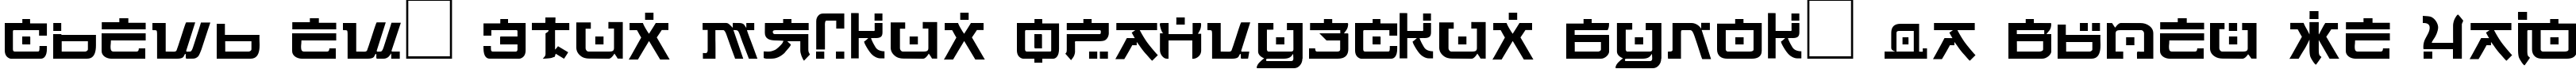 Пример написания шрифтом DSJapanCyr  Normal текста на русском